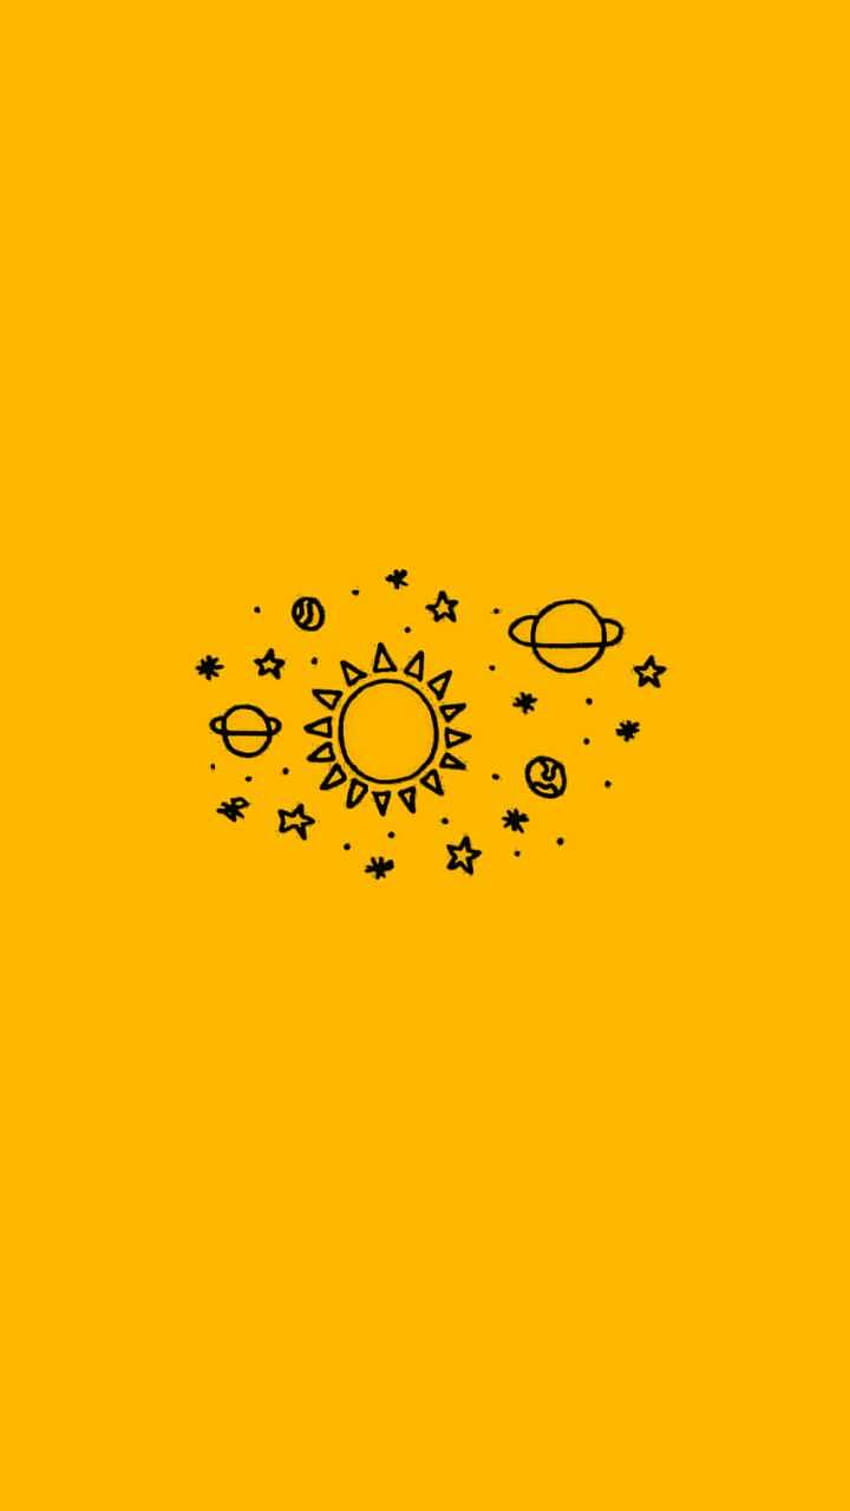 Amarillo Triste Estético Tumblr Amarillo. 3 Película, cine, cine, drama, serie, televisión, sinopsis del libro, estética amarilla japonesa fondo de pantalla del teléfono